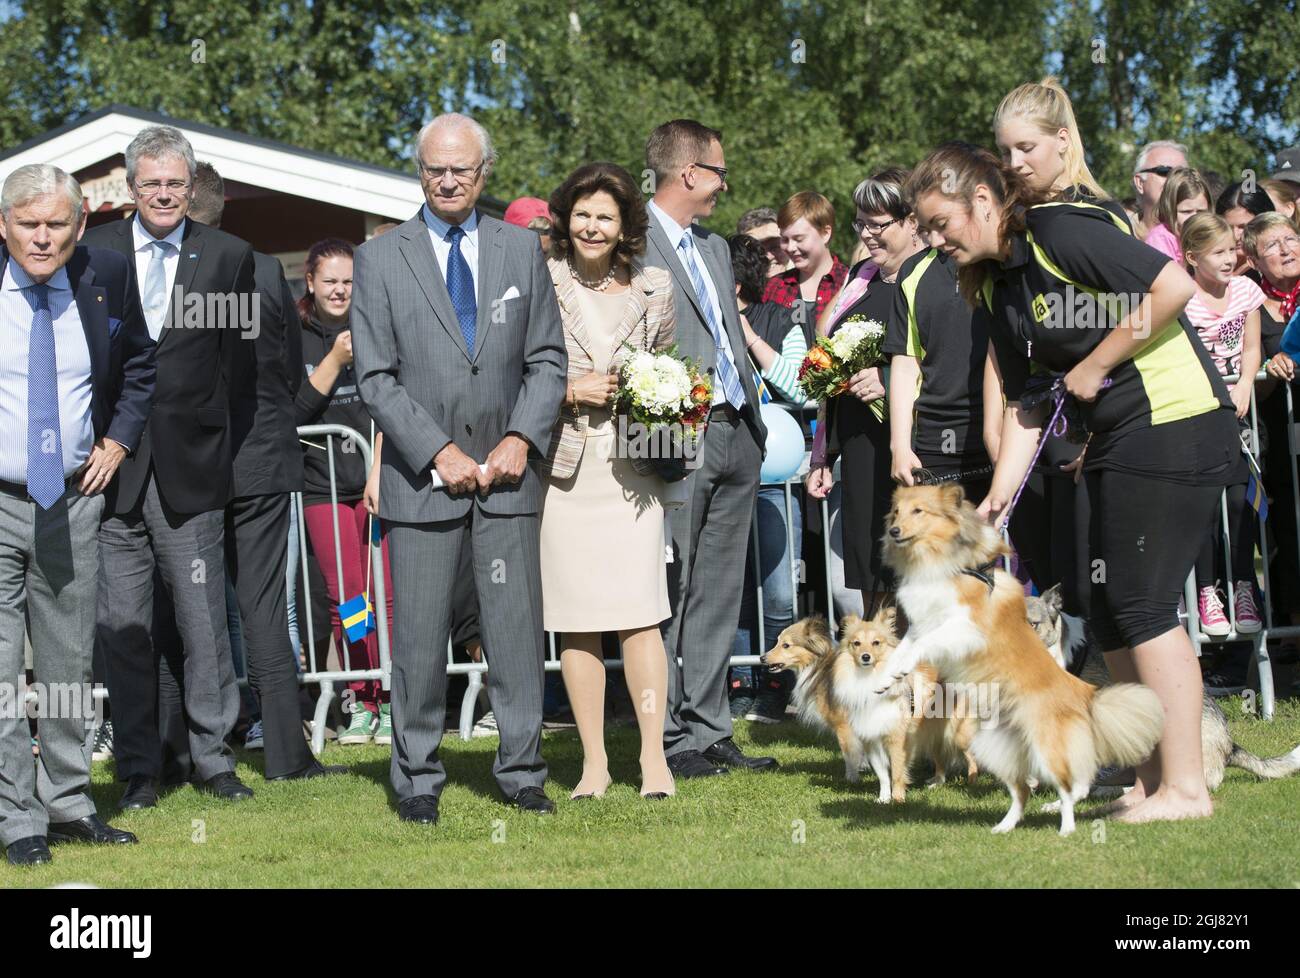 FORSHAGA 2013 King Carl Gustaf of Sweden and Queen Silvia.  Kung Carl Gustaf och drottning Silvia ser pÃƒÂ¥ hund dressyr. Detta pÃƒÂ¥ Forshagaakademi, besÃƒÂ¶ket var en del av kungens resa i VÃƒÂ¤rmland idag. Kungen reser under ÃƒÂ¥ret till alla svenska lÃƒÂ¤n som en del av hans firande av 40 ÃƒÂ¥r pÃƒÂ¥ tronen.ka lÃƒÂ¤n som en del av hans firande av 40 ÃƒÂ¥r pÃƒÂ¥ tronen.  Foto: Fredrik Sandberg / SCANPIX / Kod 10080 Stock Photo